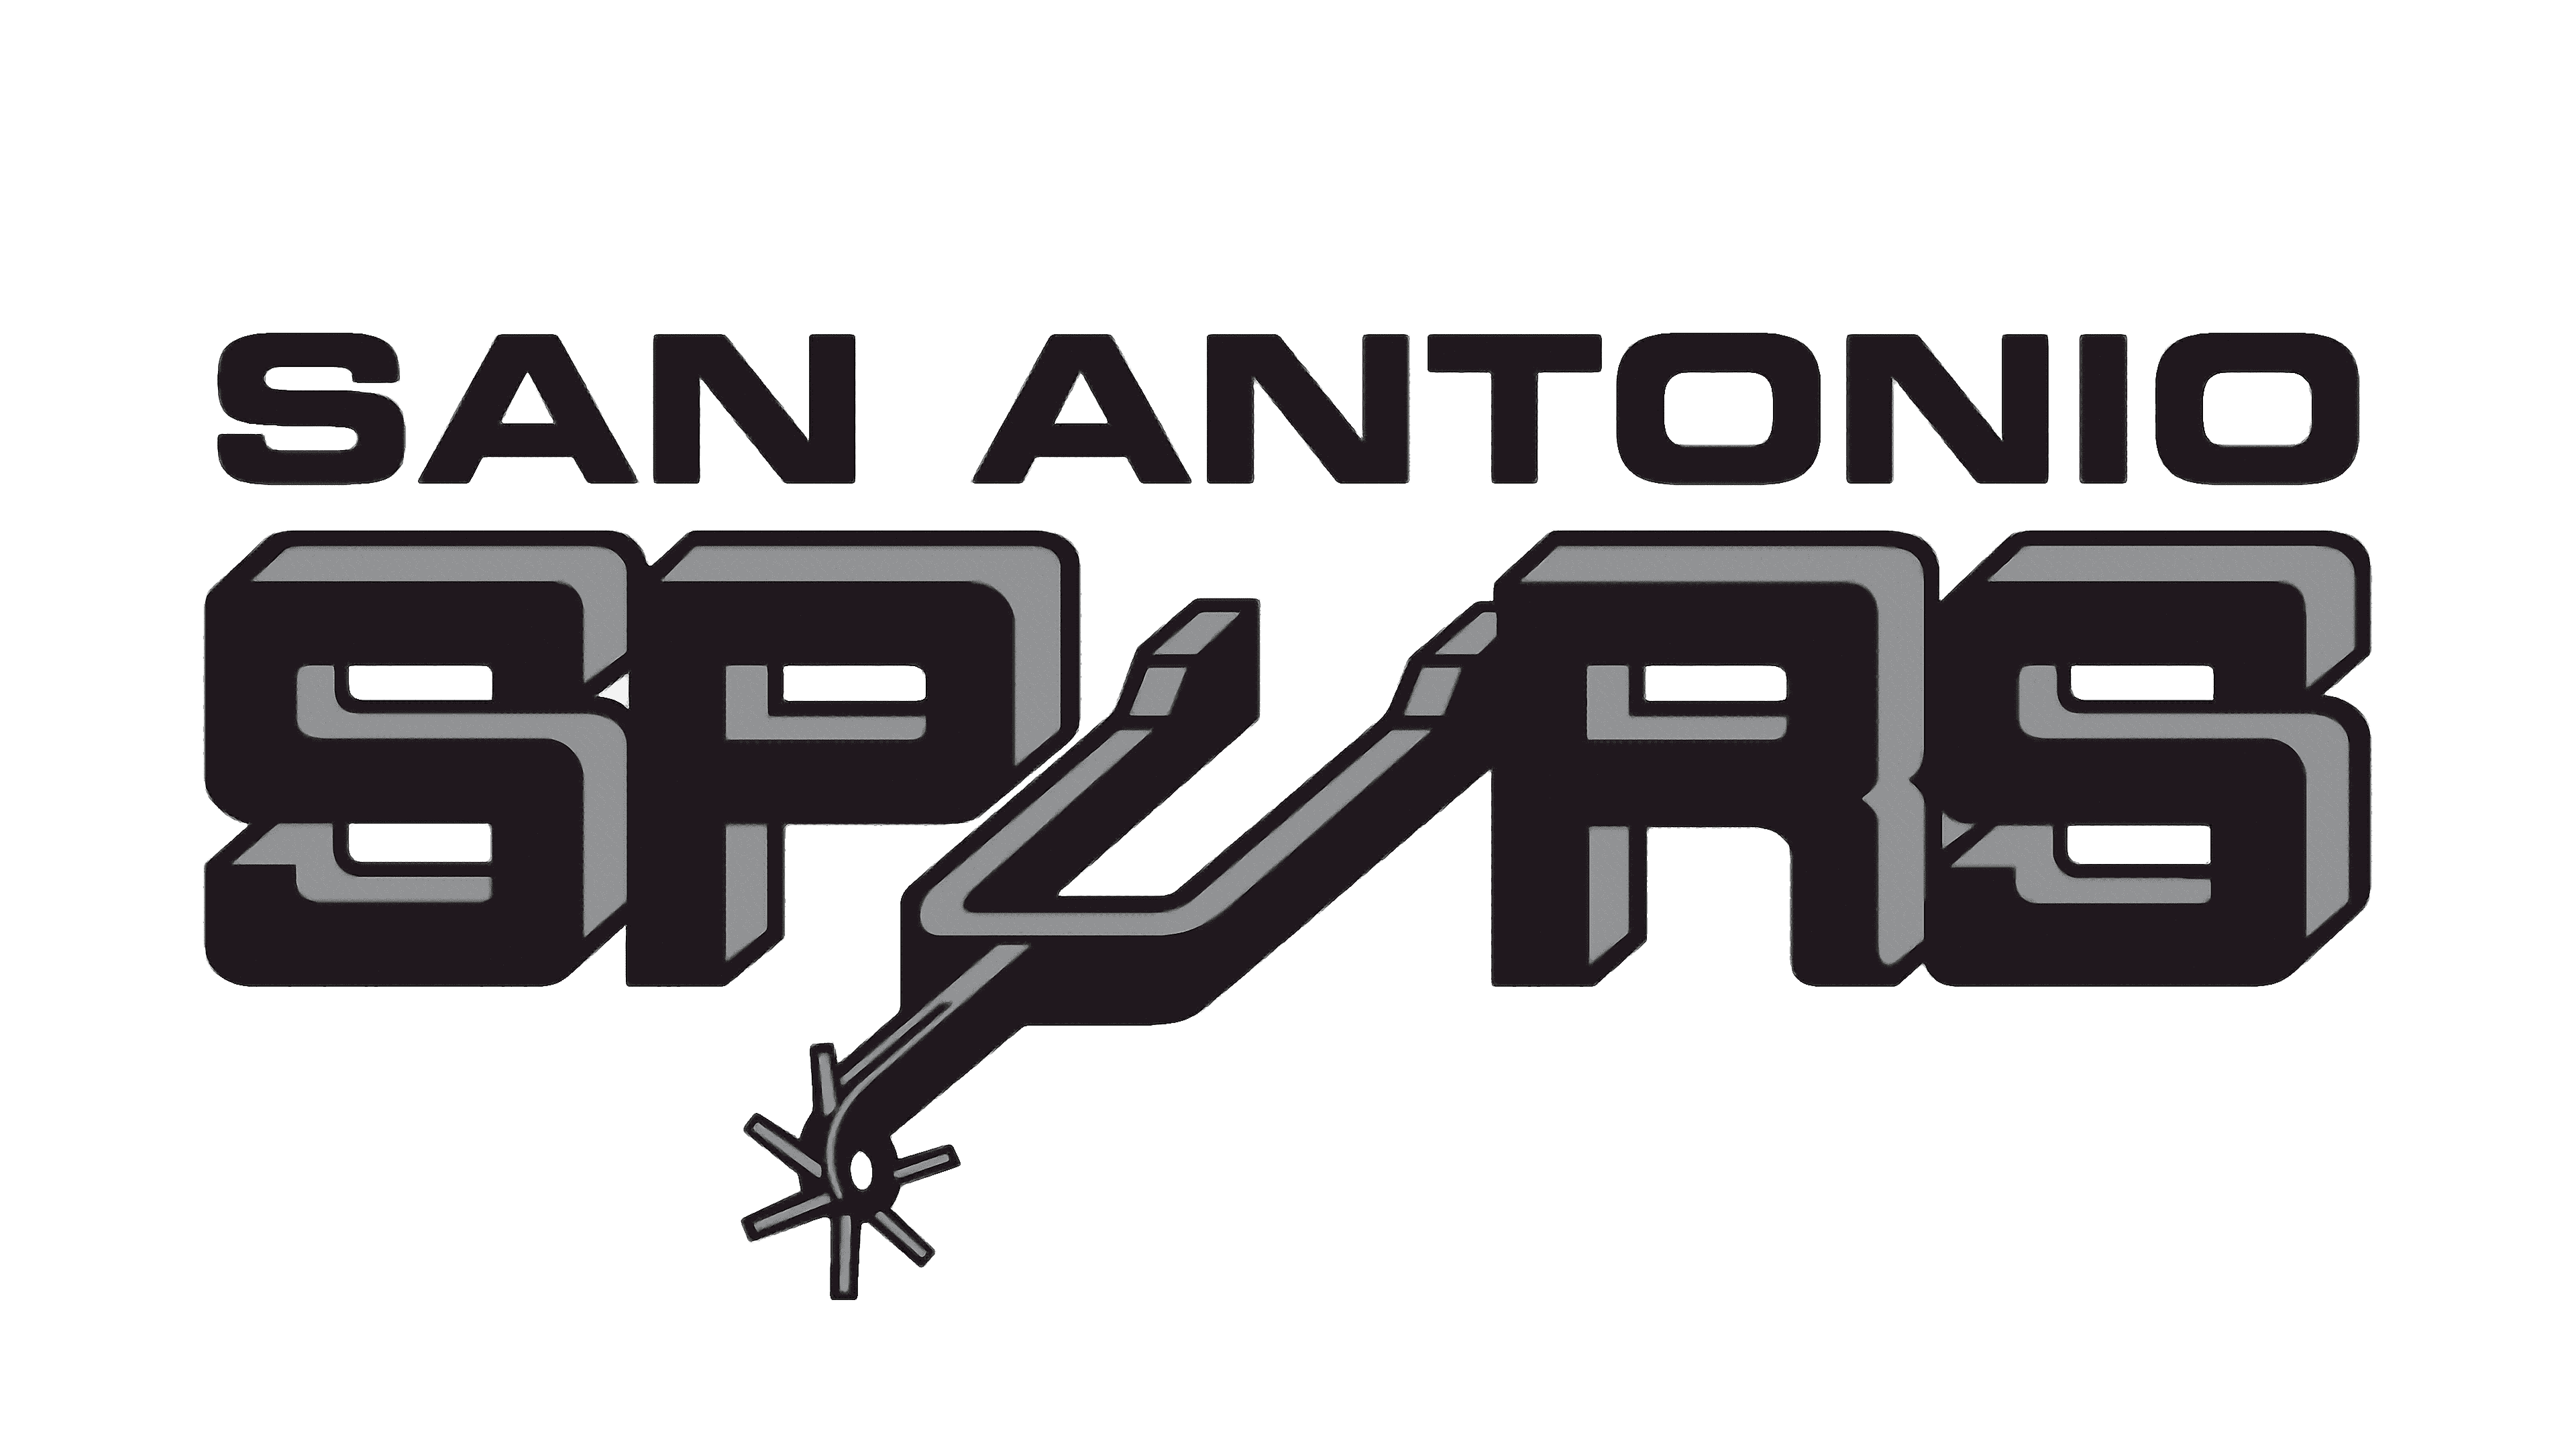 El primer logo marcó un eje para lo que vendría durante toda la etapa en San Antonio (FOTOGRAFÍA gentileza 1000marcas).